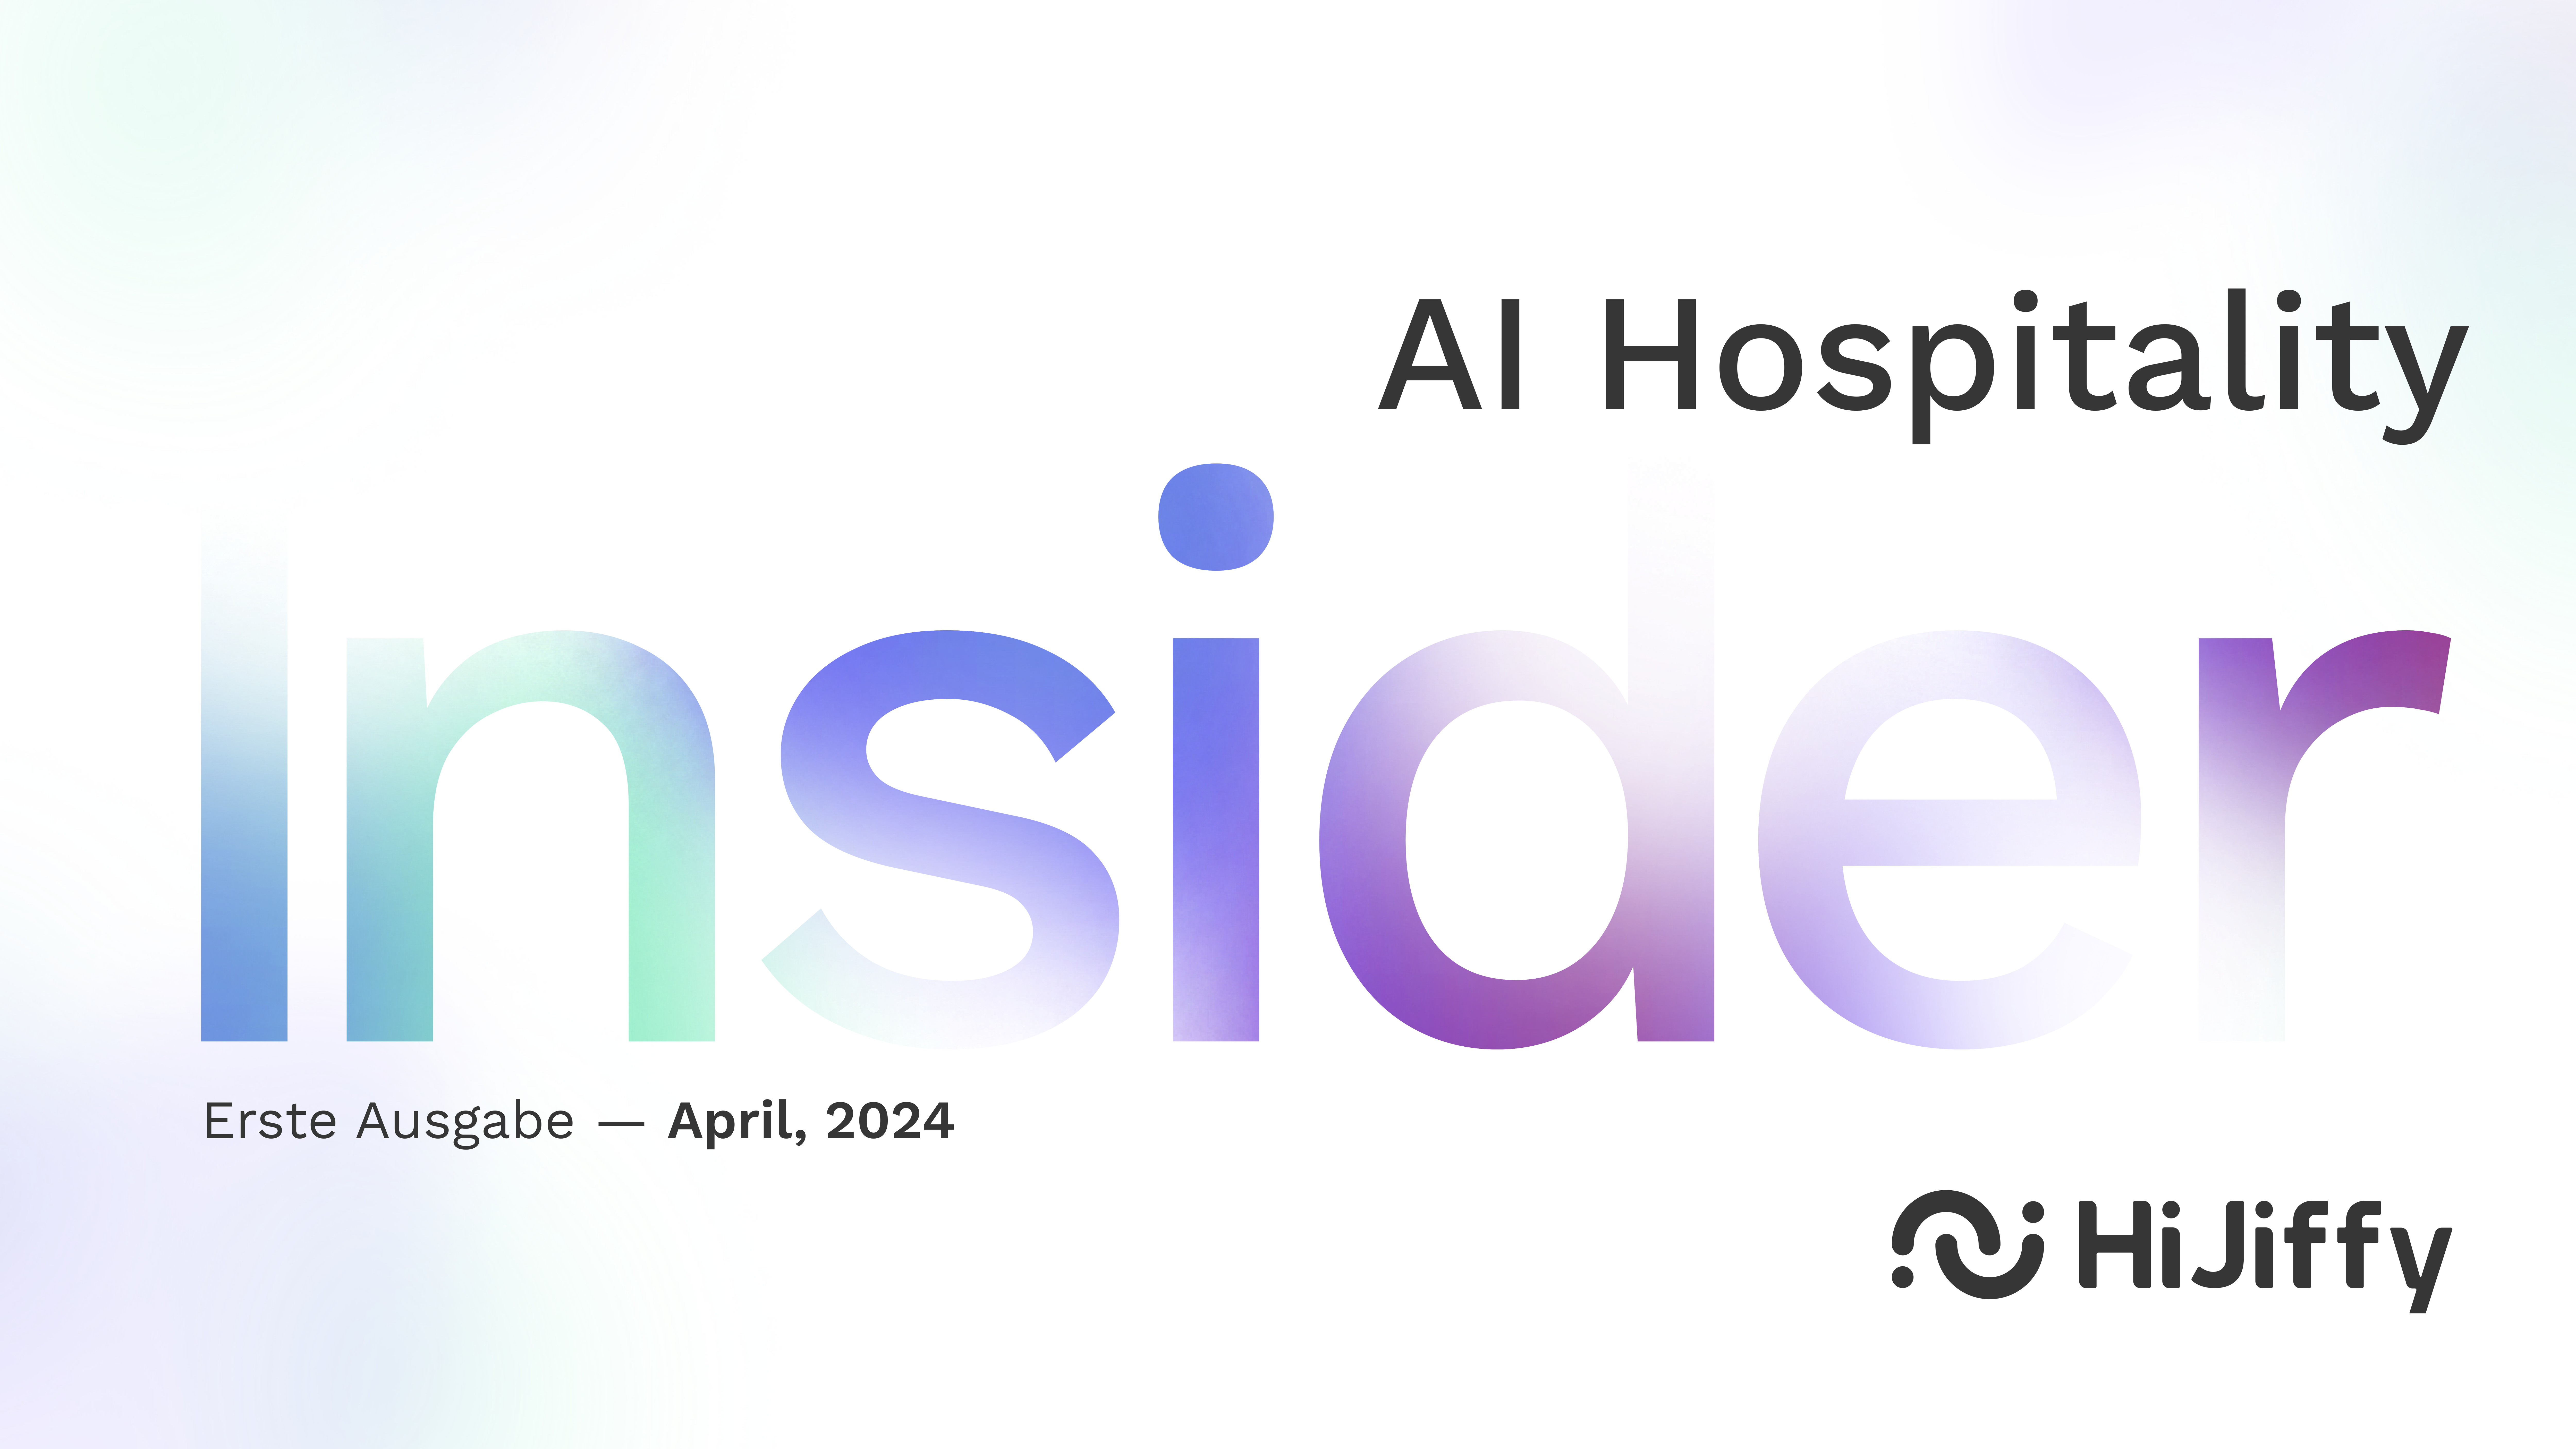 AI Hospitality Insider - Die erste Ausgabe unseres Magazins für die Hotellerie ist erhältlich!